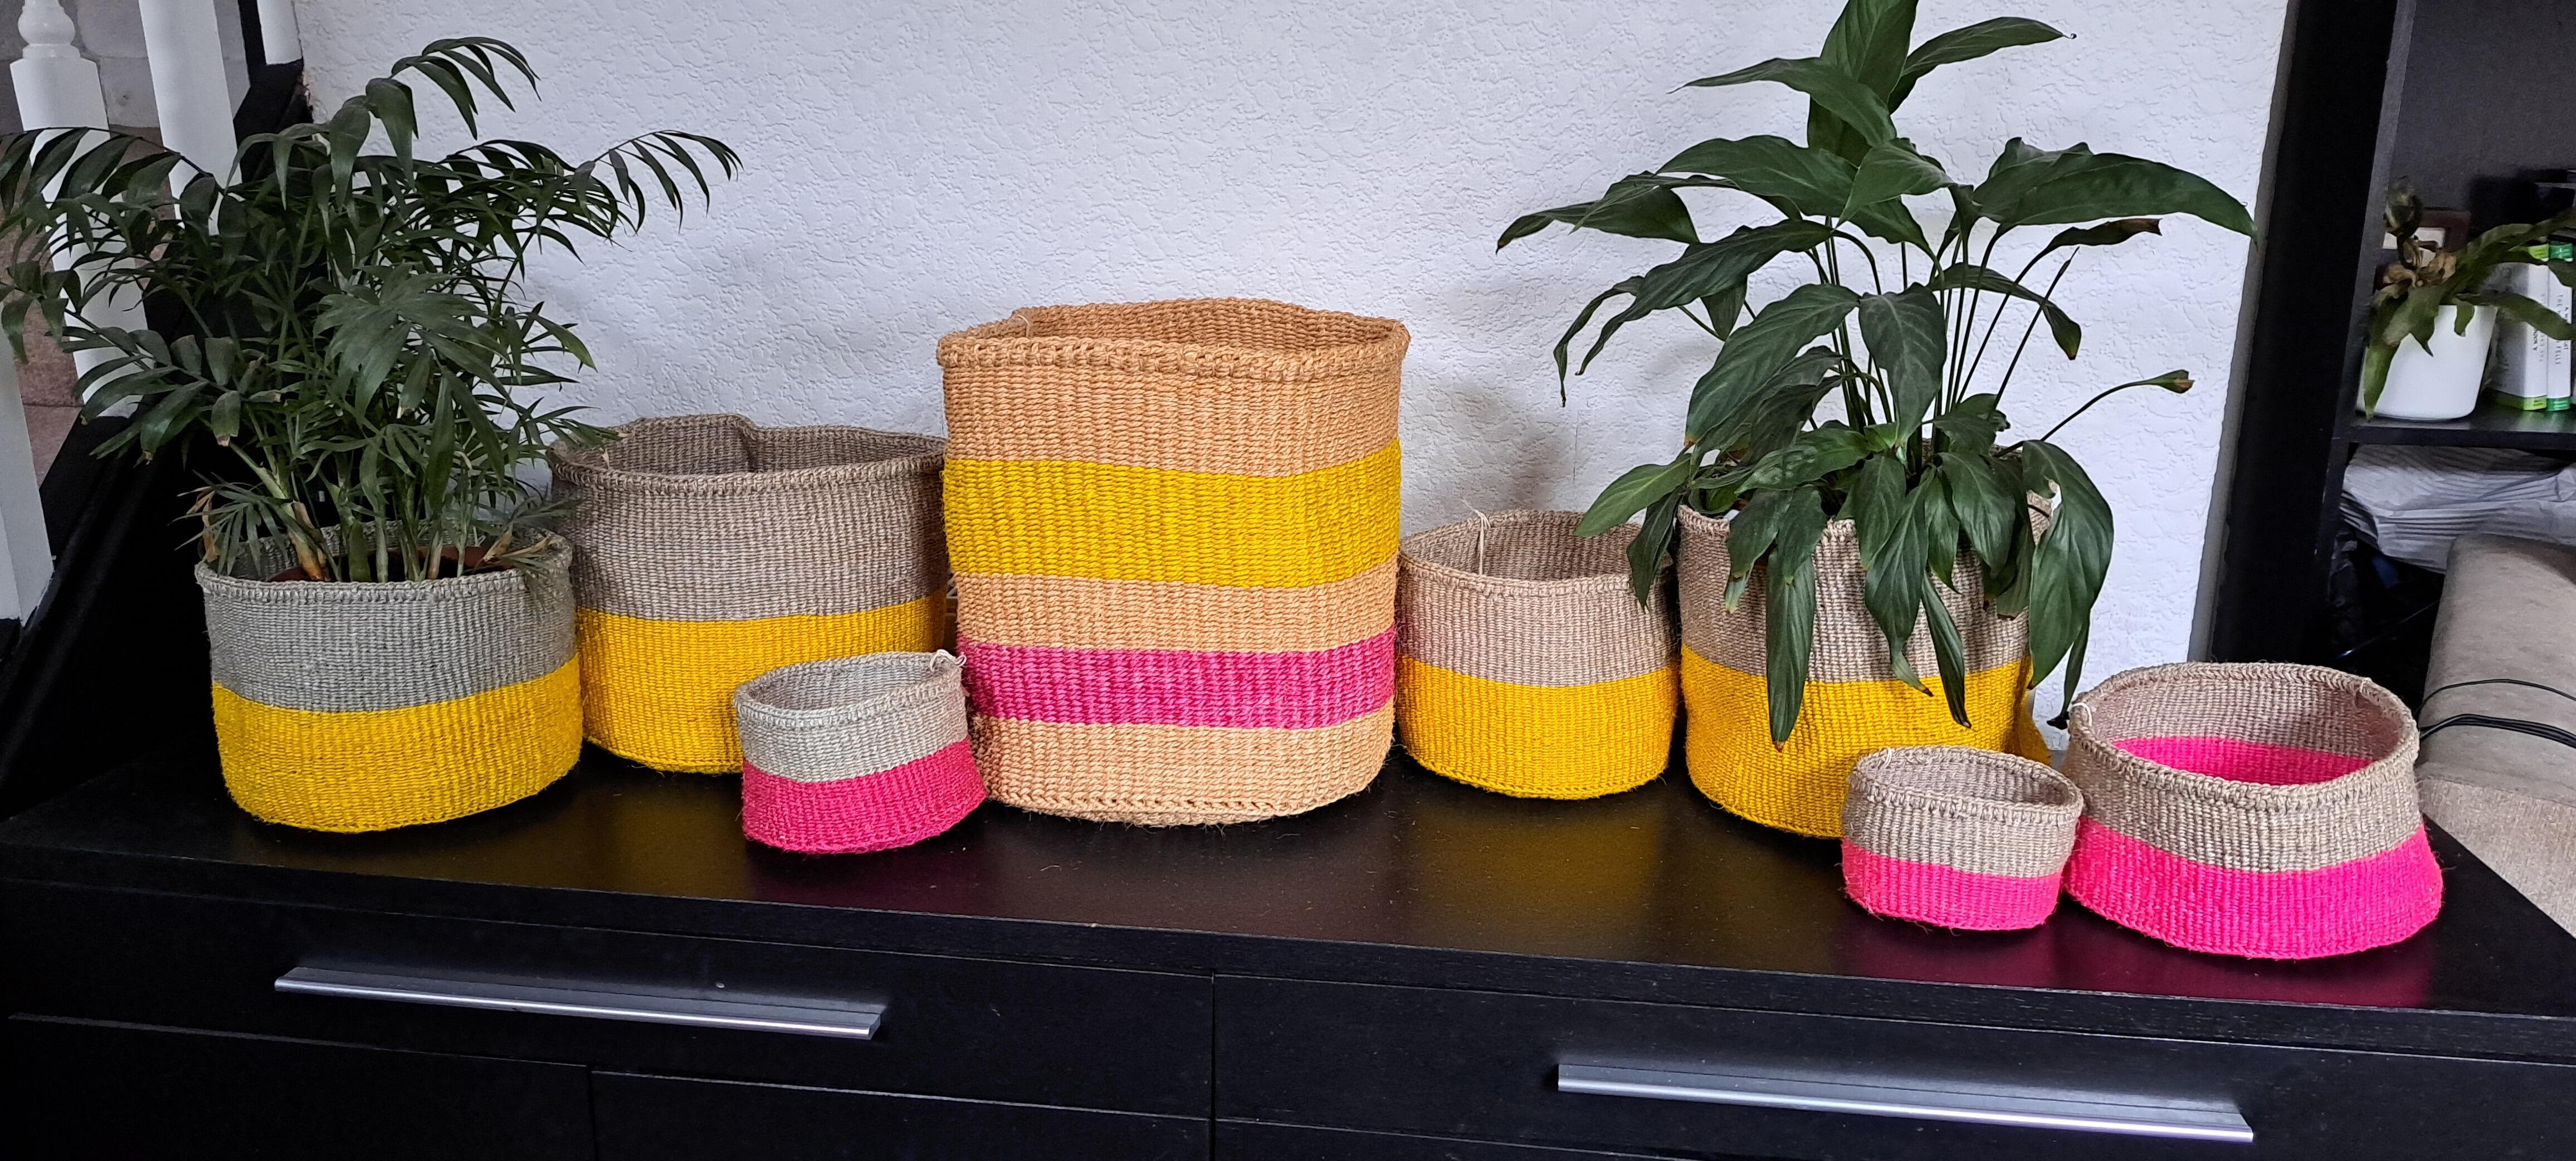 Bright storage baskets